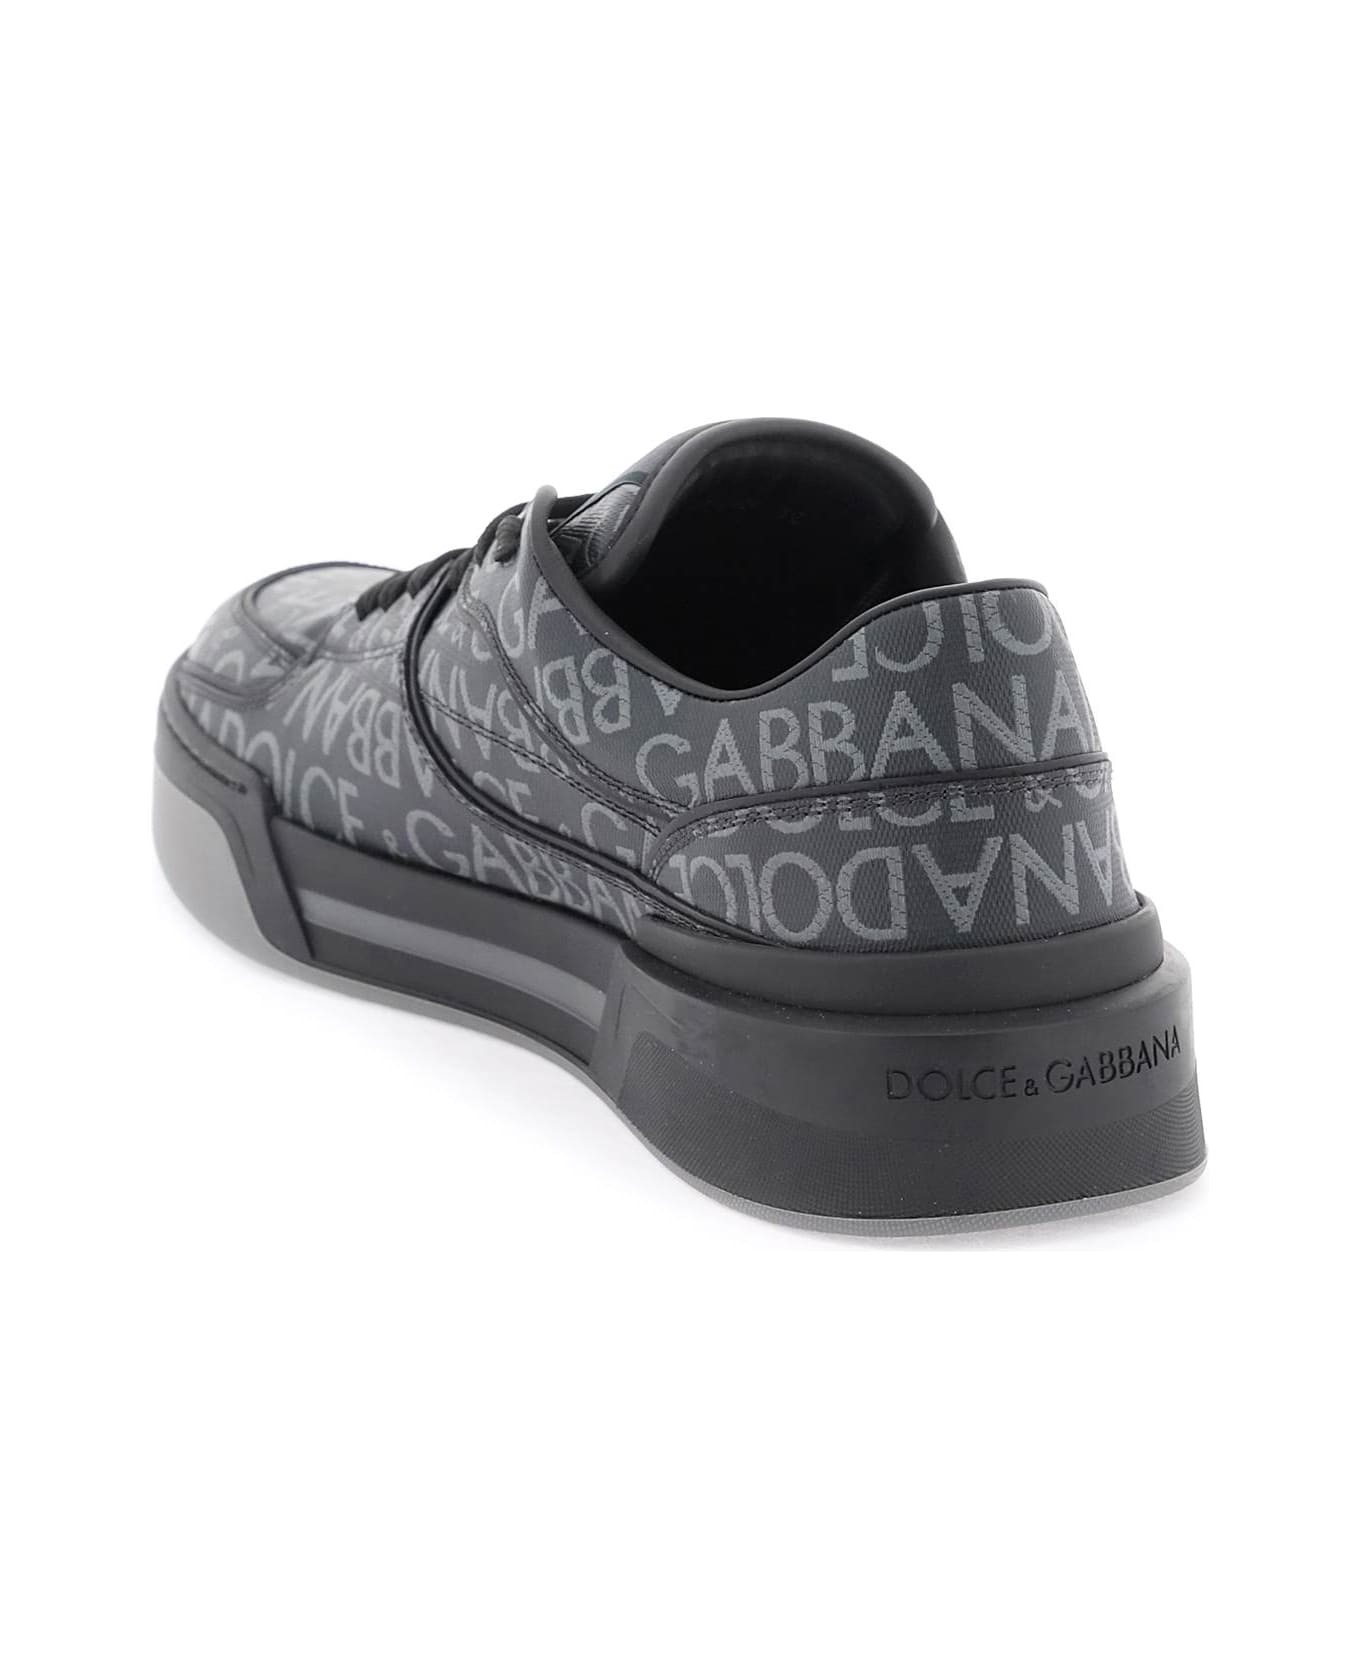 Dolce & Gabbana Roma Sneakers - Nero/grigio スニーカー